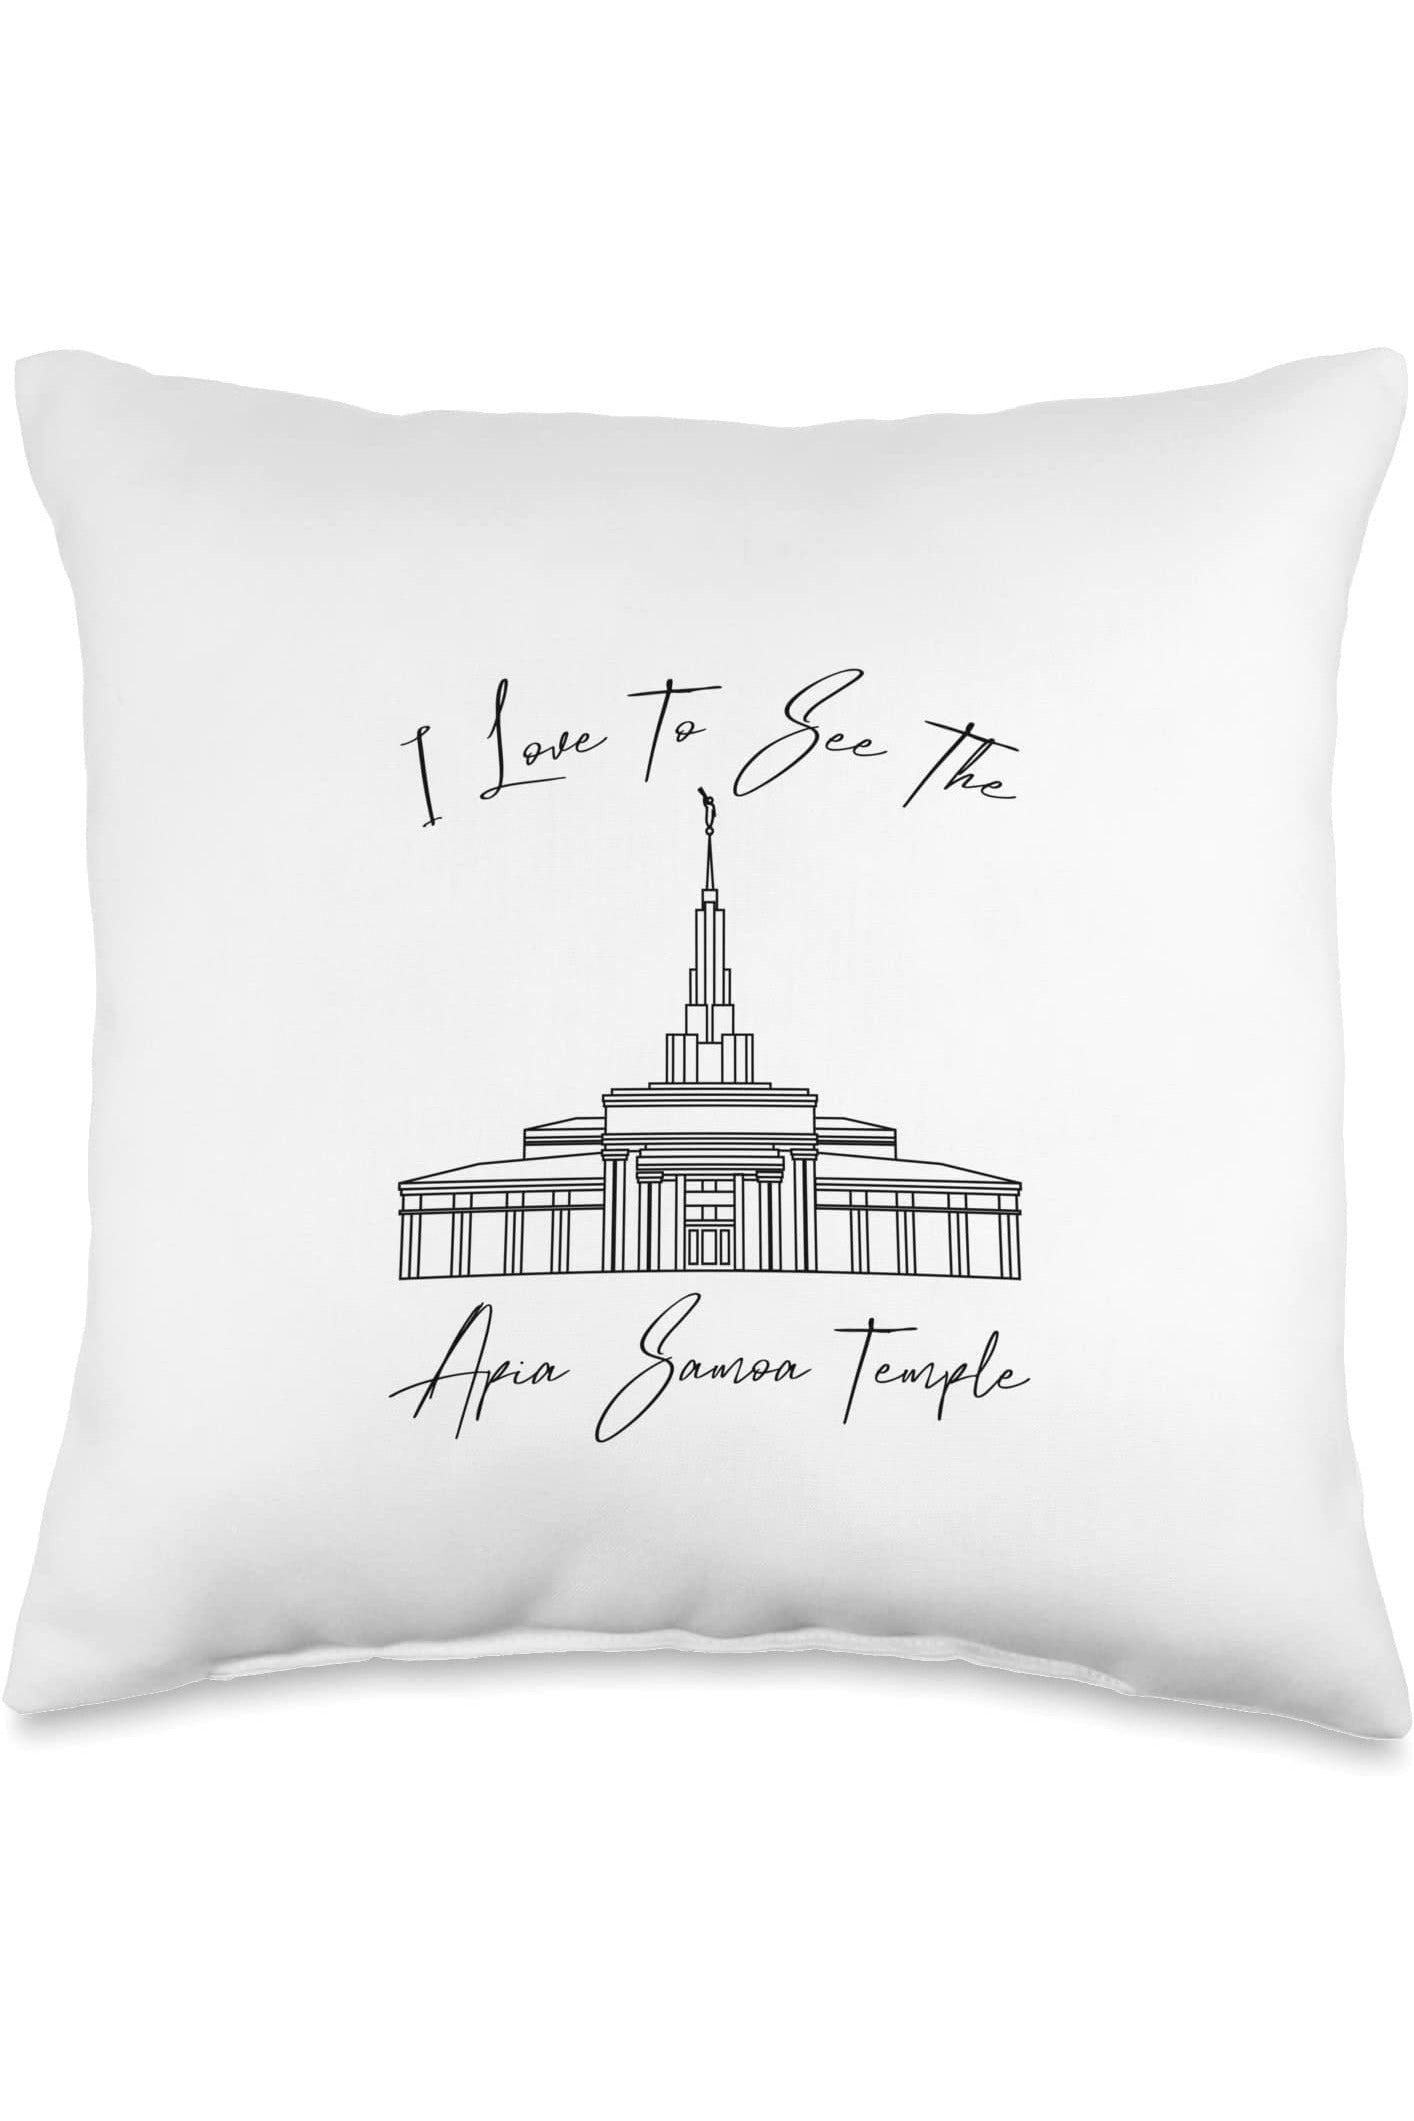 Apia Samoa Temple Throw Pillows - Calligraphy Style (English) US